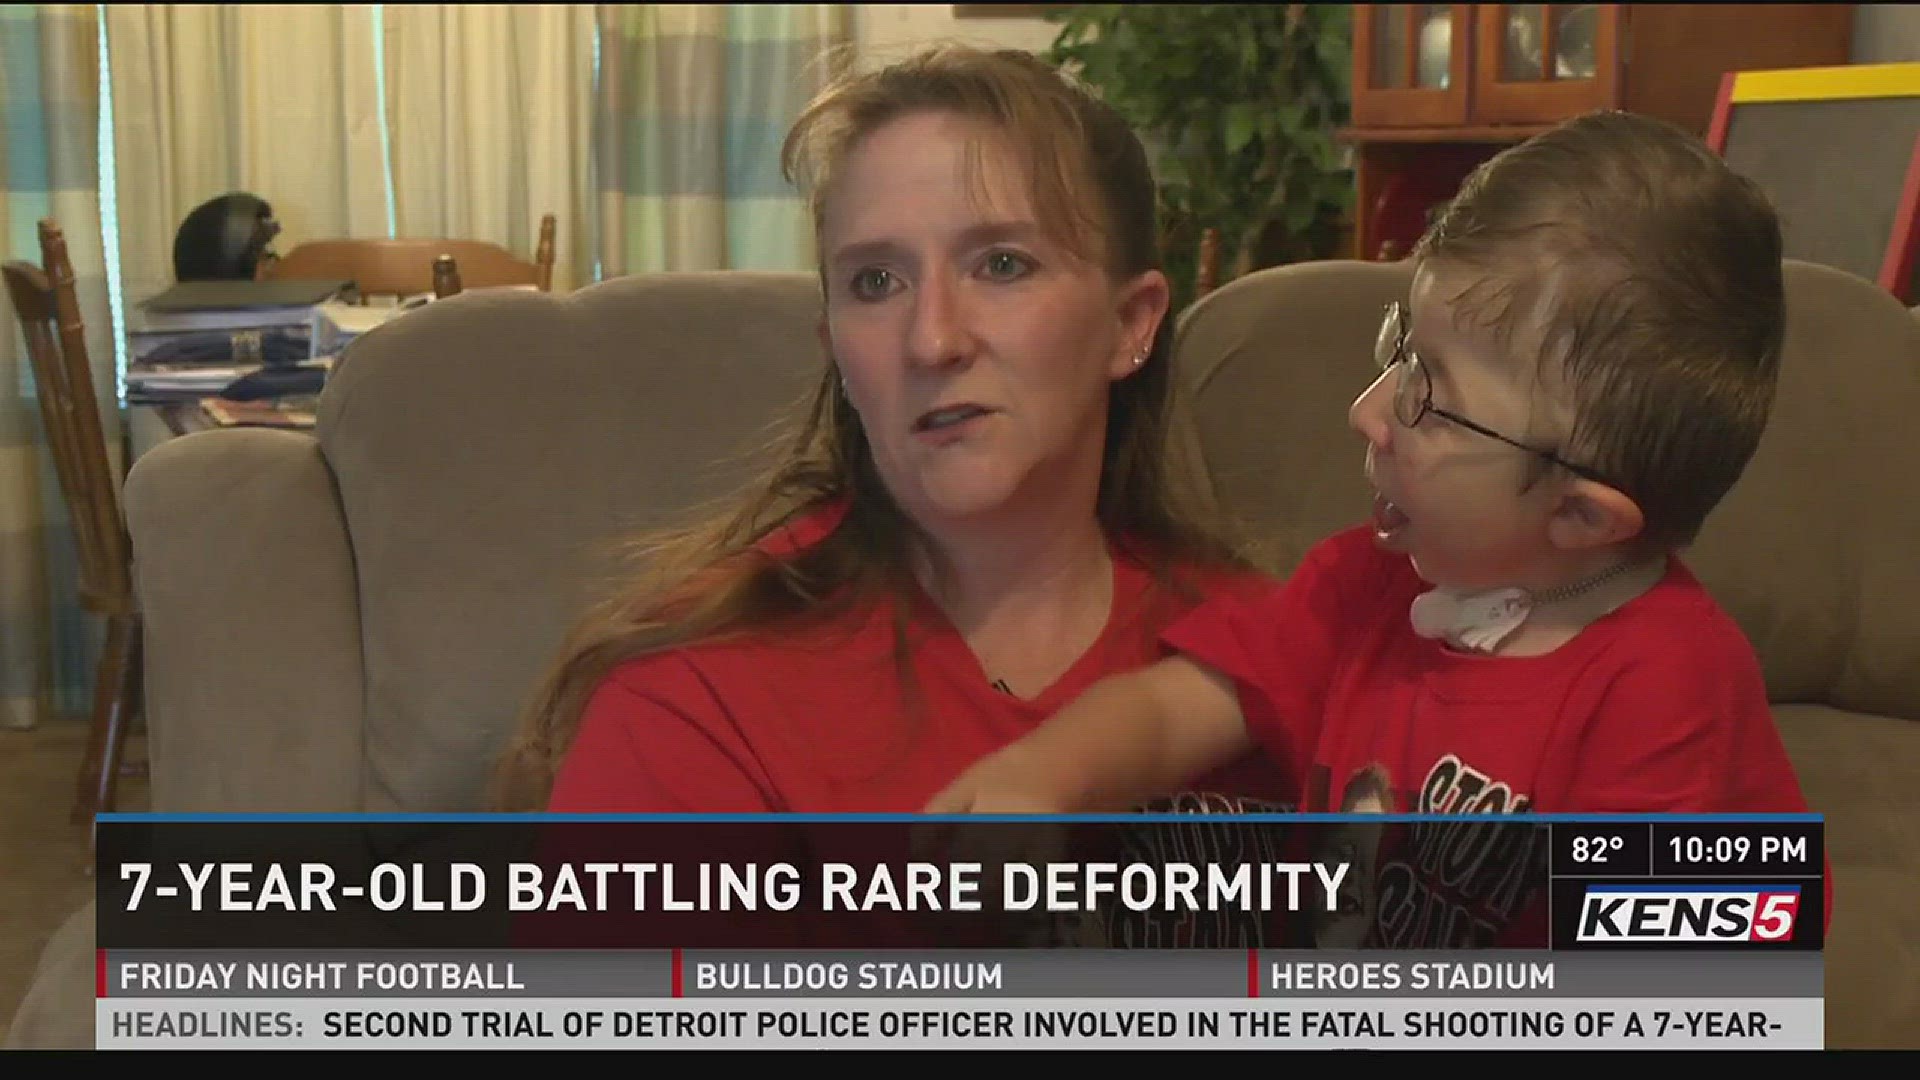 Young boy battling rare deformity